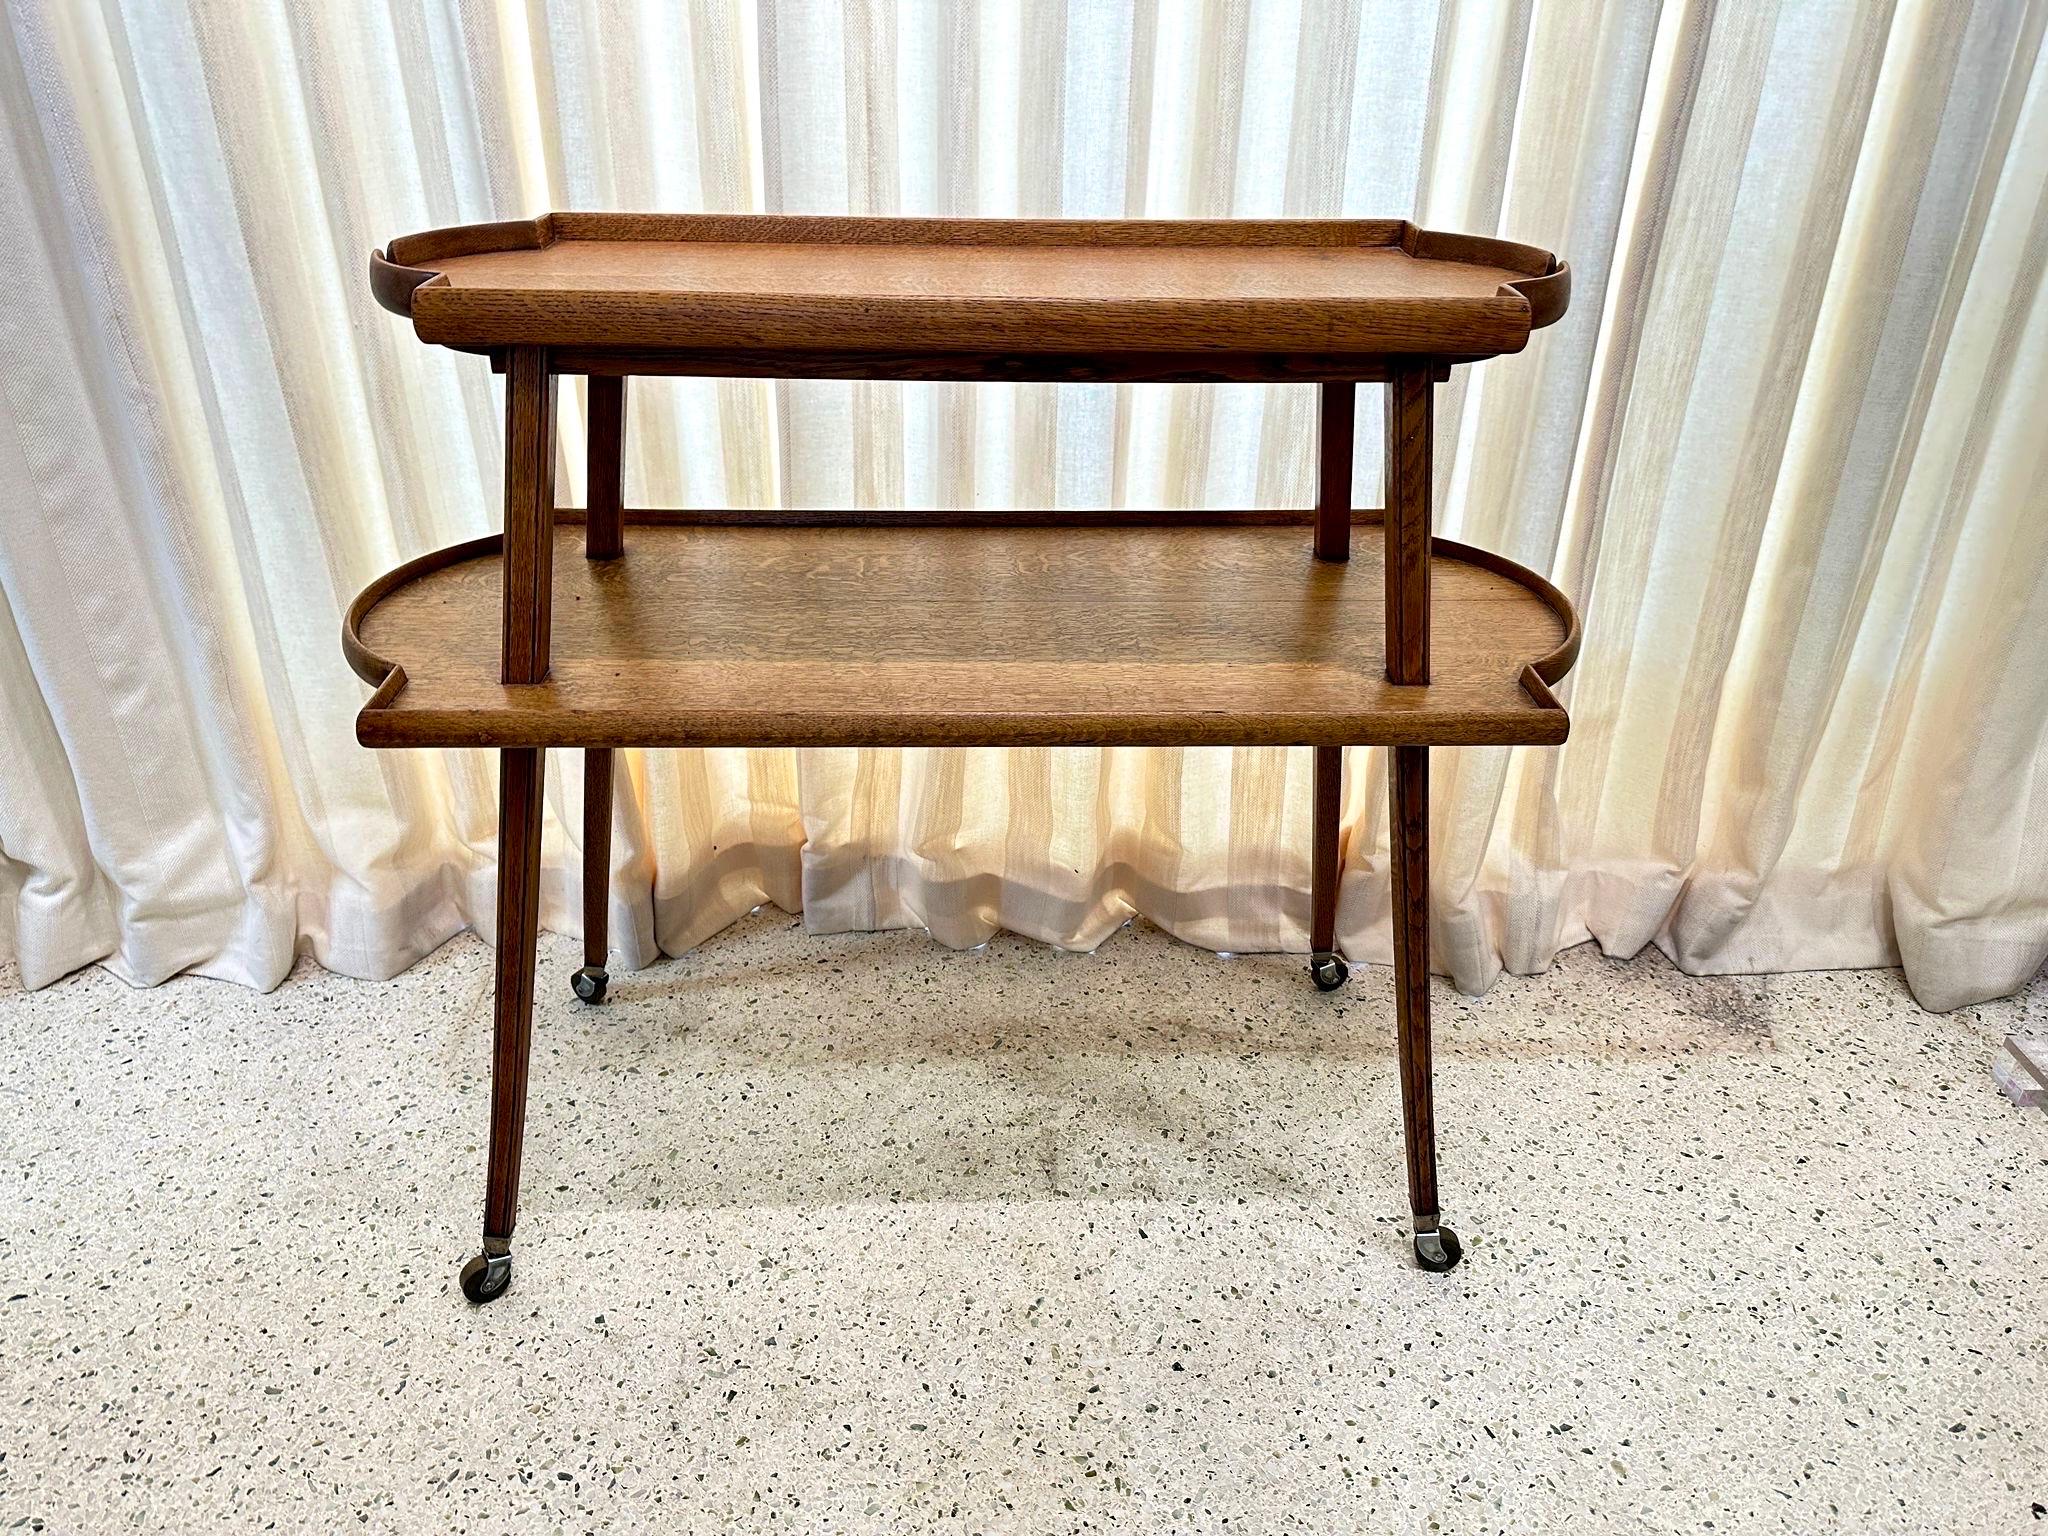 Milieu du XXe siècle Early 20th C. French Oak Two-Tier Serving Console Table on Casters (table console à deux niveaux en chêne français sur roulettes) en vente